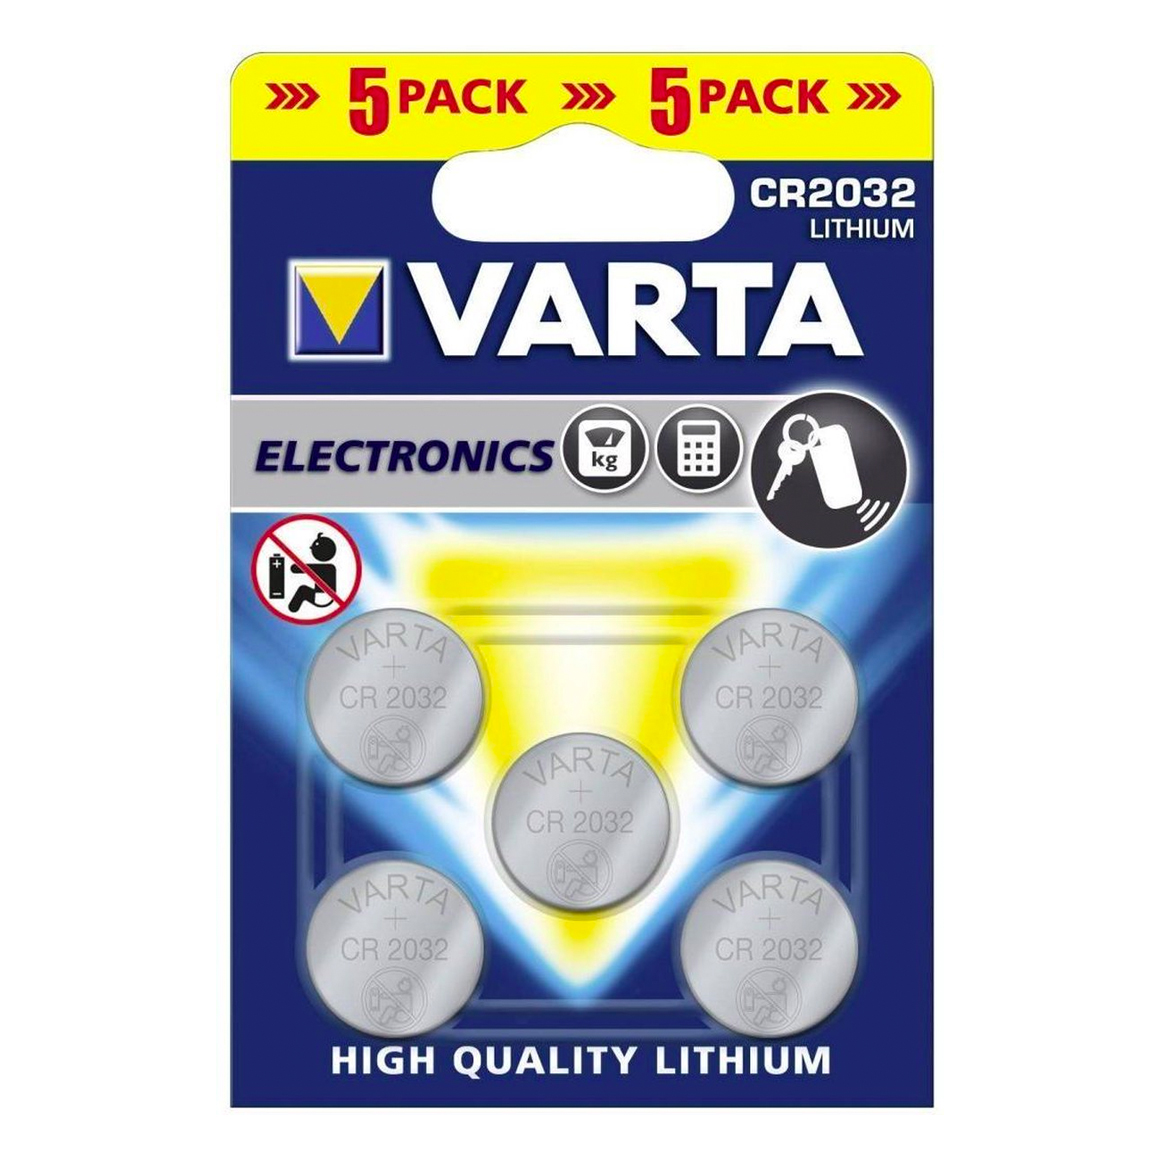 Varta CR2032 3V Lithium knoopcel batterijen 5-pack